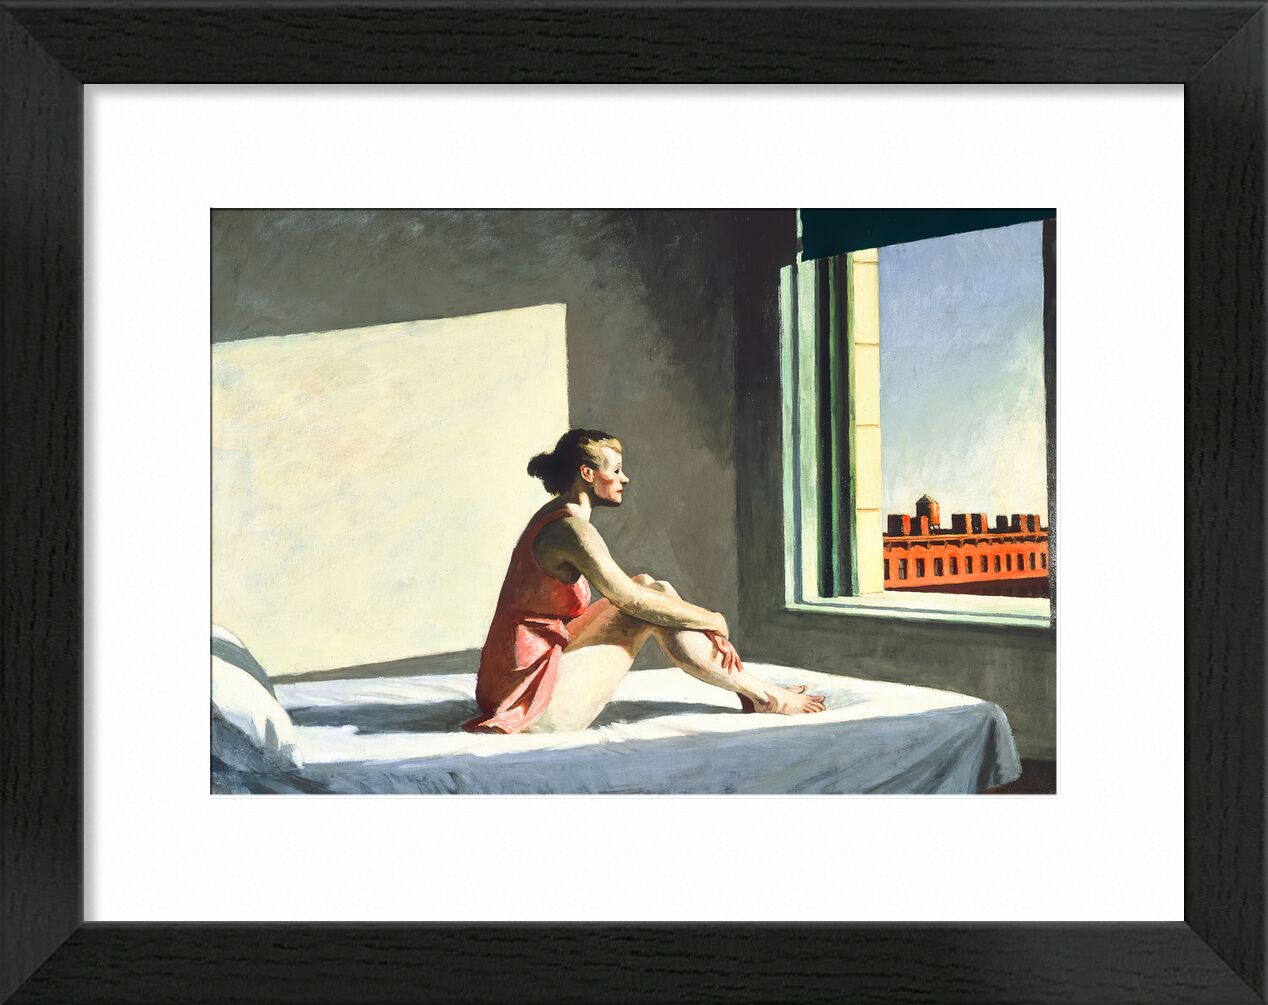 Morgensonne - Edward Hopper von Bildende Kunst, Prodi Art, Trichter, vereinigte Staaten, Stadt, Bett, Zimmer, Malerei, Frau